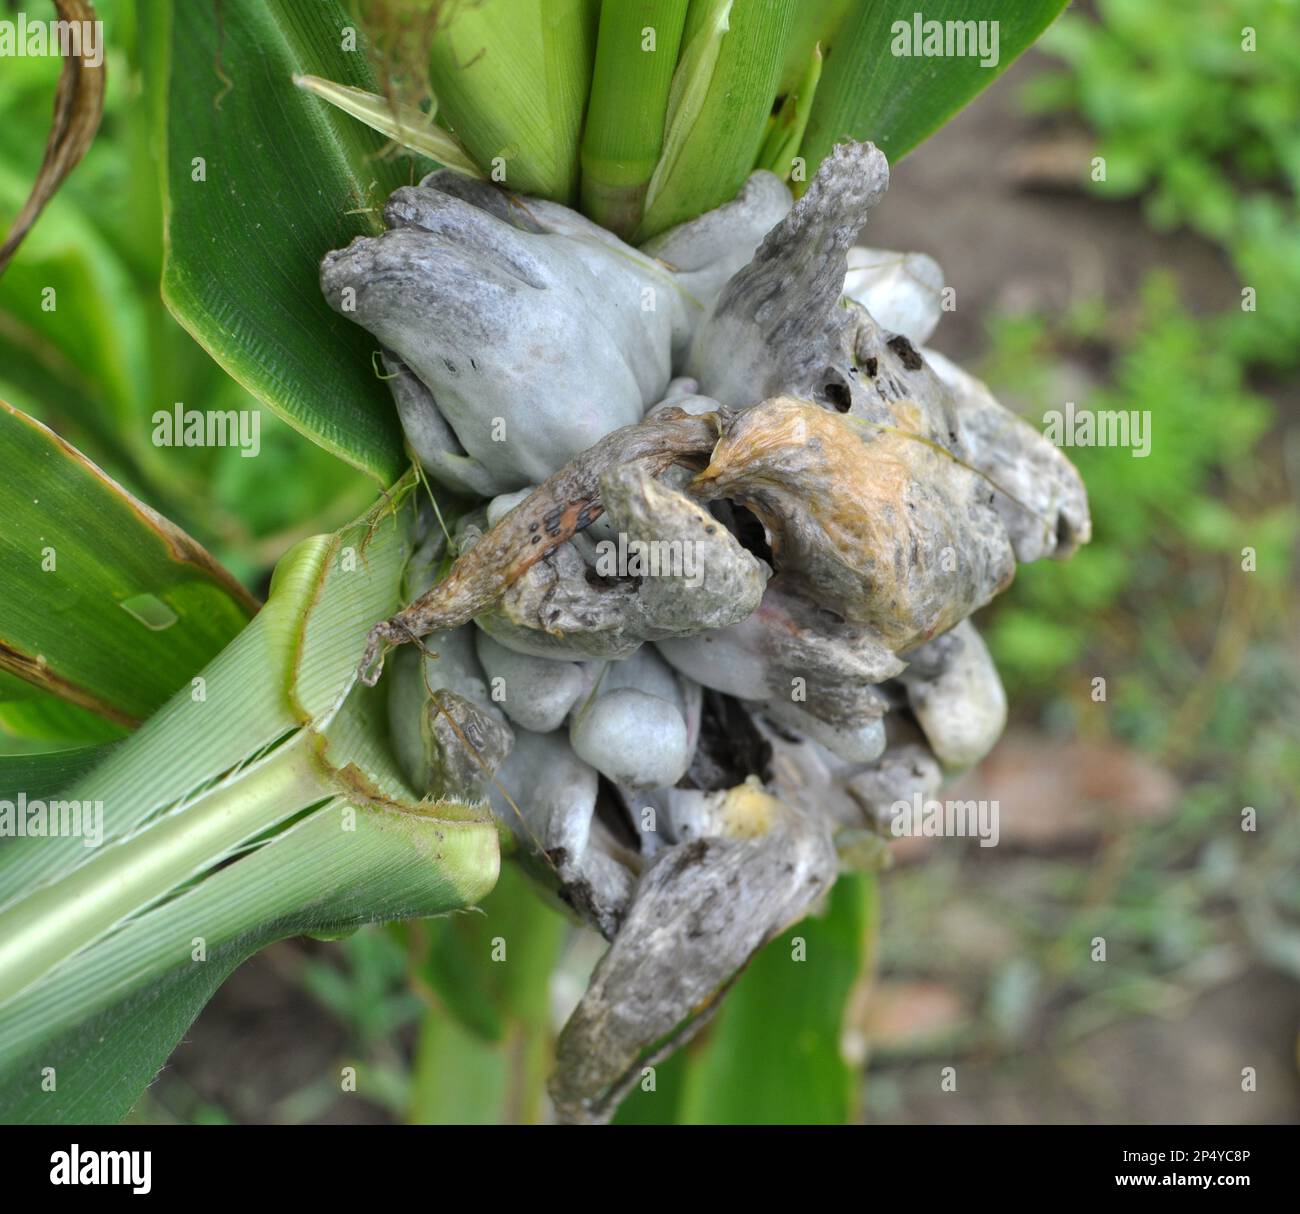 Plante de maïs malade affectée par le champignon Ustilago zeae Unger Banque D'Images